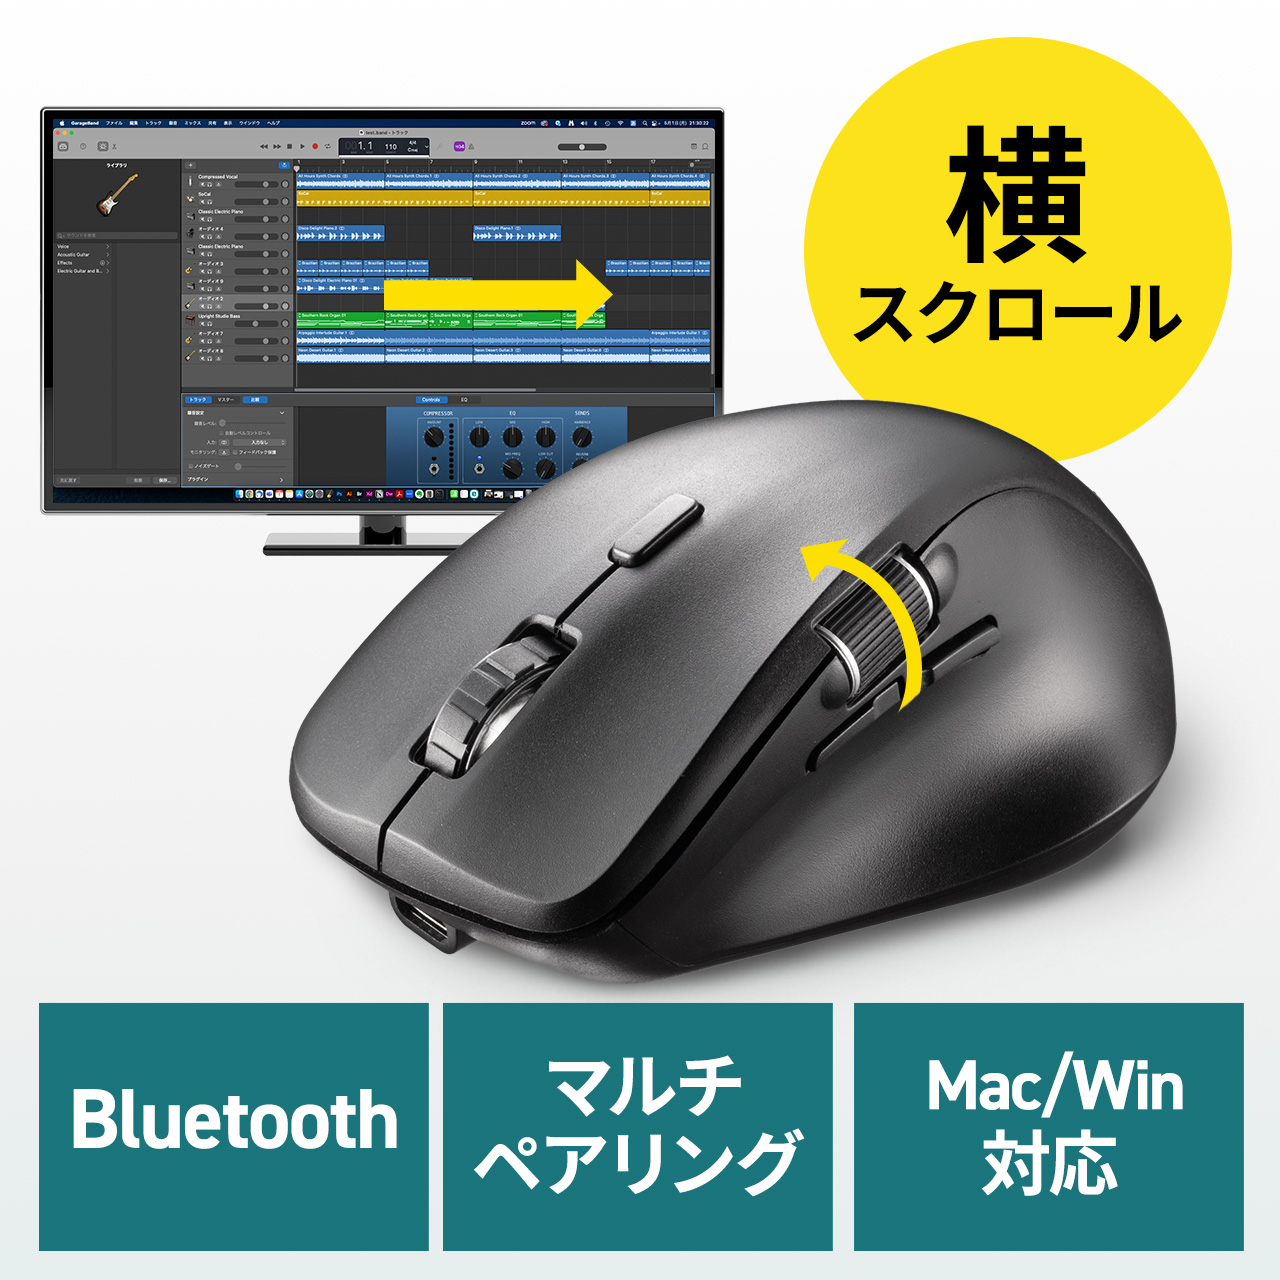 サイドホイールつき Bluetoothマウス 横スクロール 静音ボタン マルチペアリング 400-MABT191の販売商品 通販ならサンワダイレクト